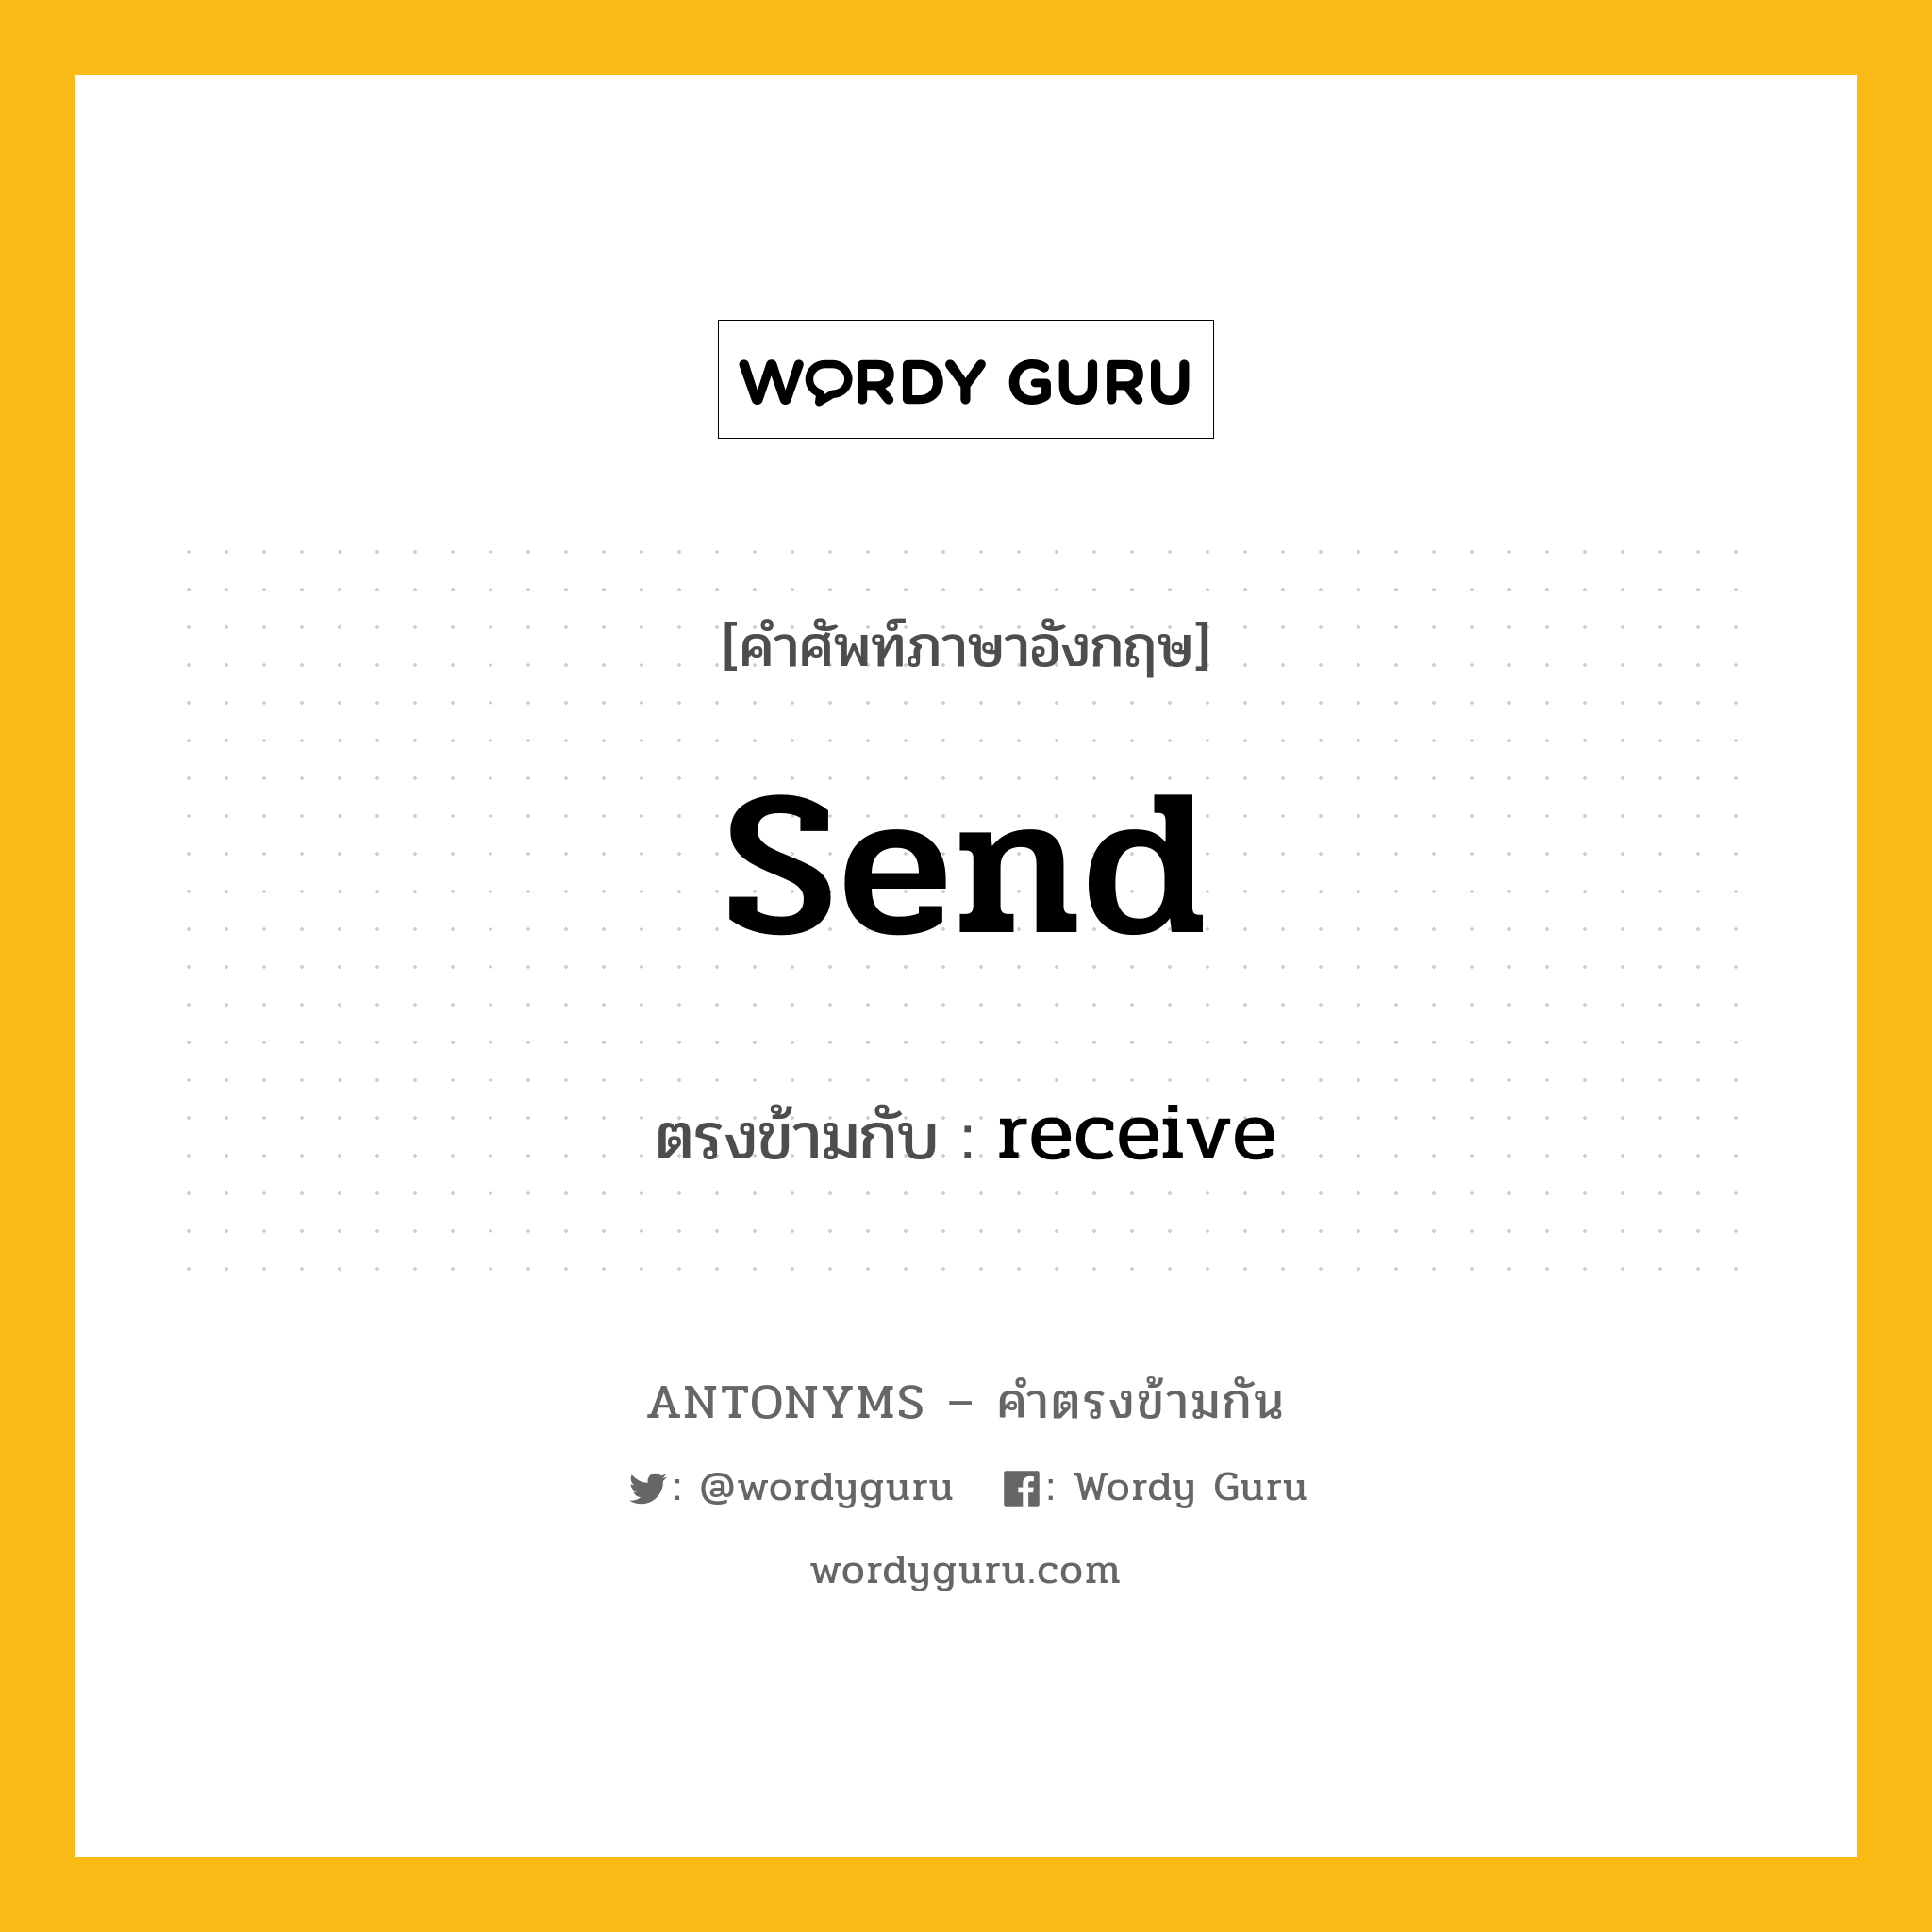 send เป็นคำตรงข้ามกับคำไหนบ้าง?, คำศัพท์ภาษาอังกฤษ send ตรงข้ามกับ receive หมวด receive